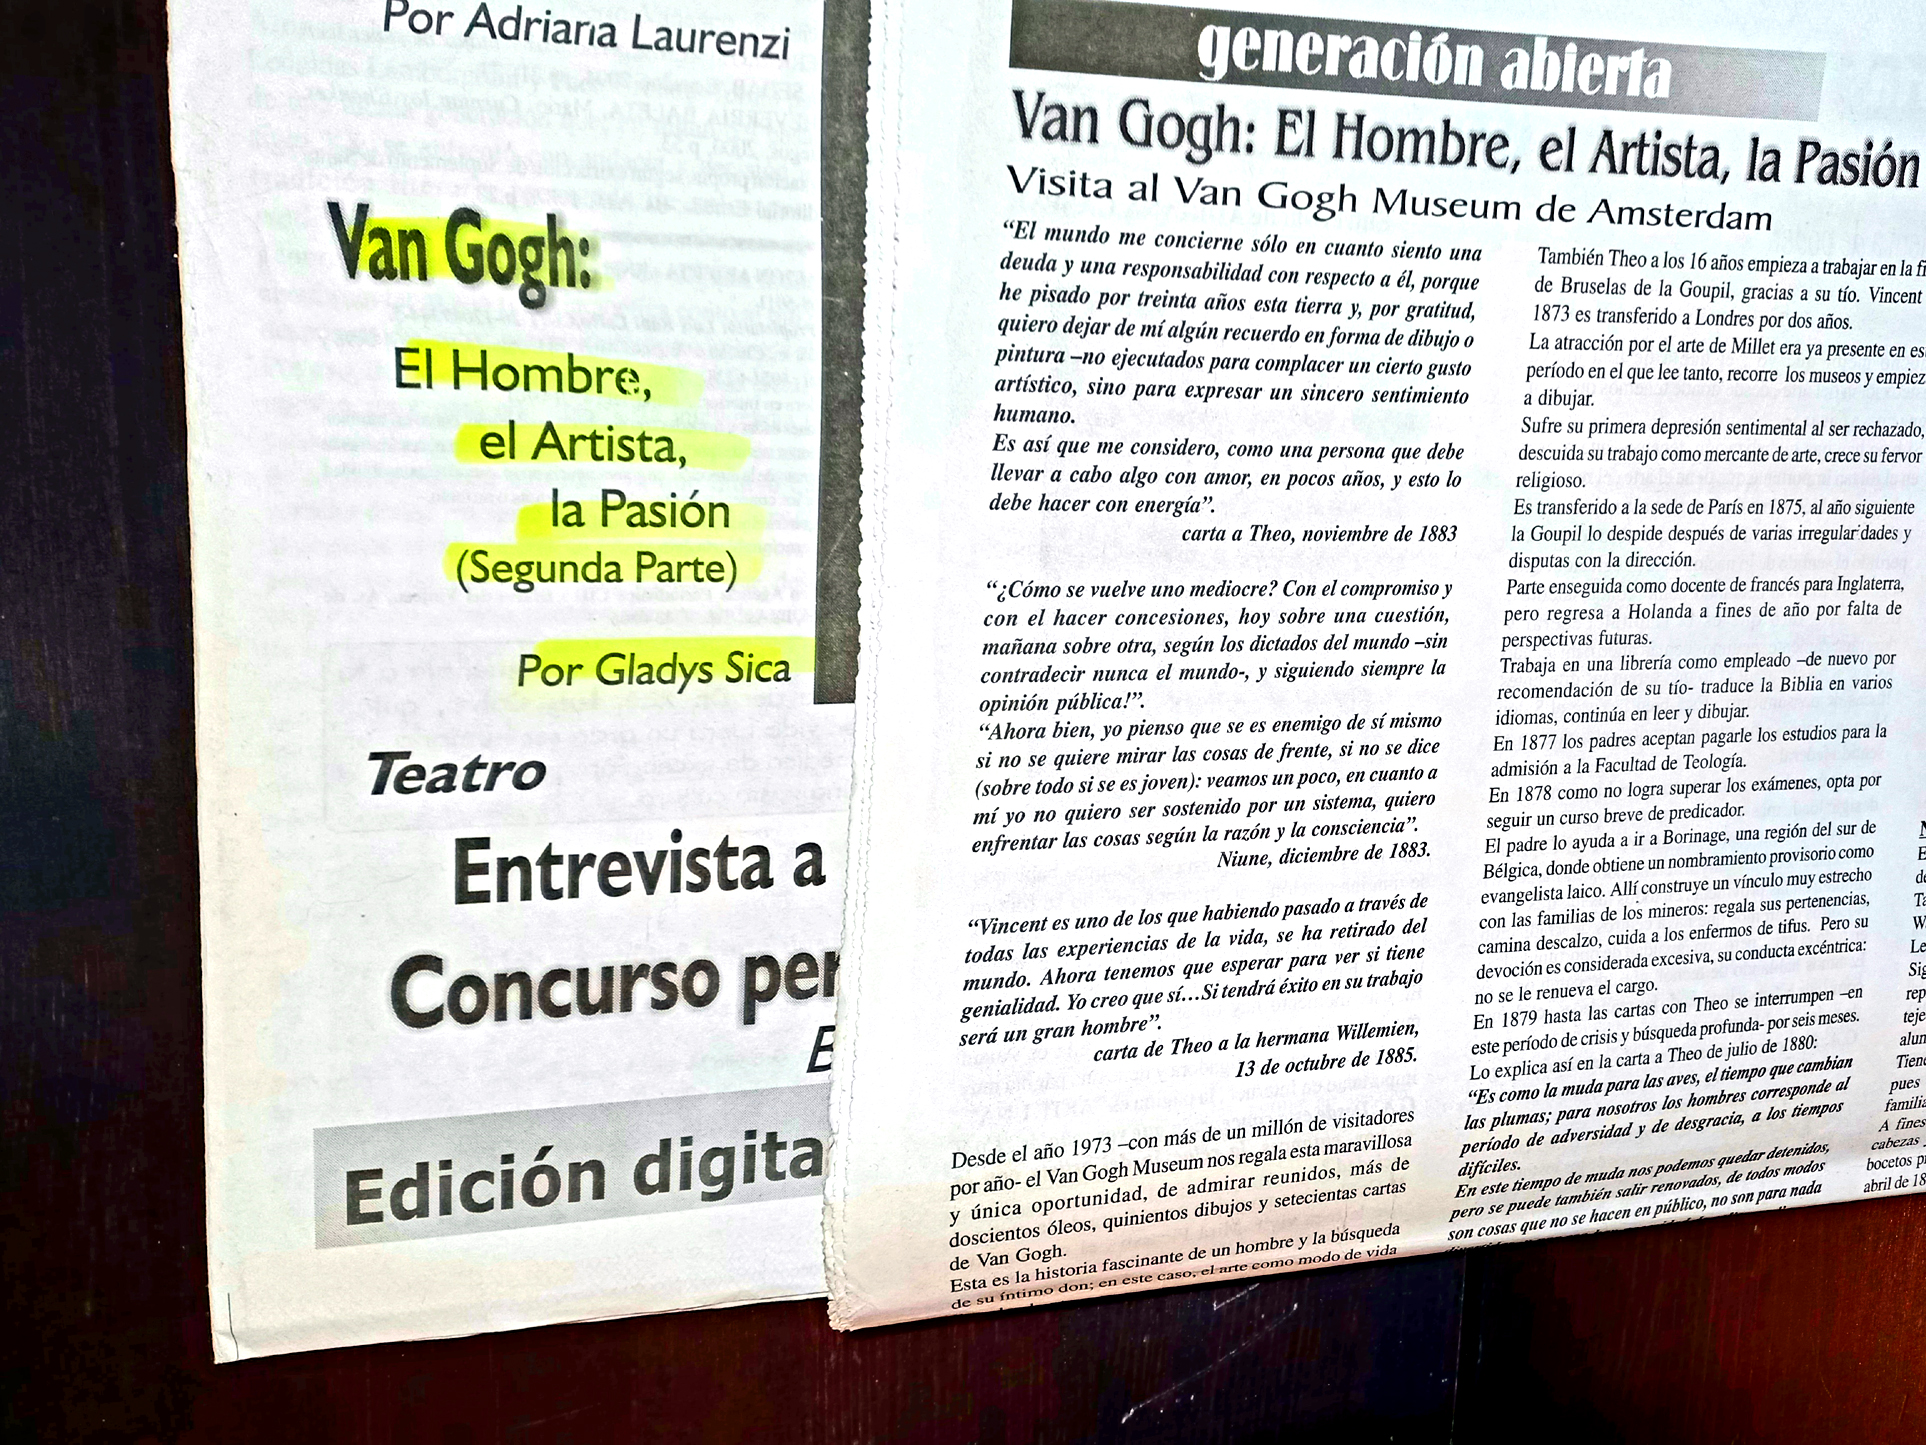 2004 - 'Van Gogh, el hombre. el artista, la pasión',  Recensione di Gladys Sica, Rivista 'Generación abierta', Argentina